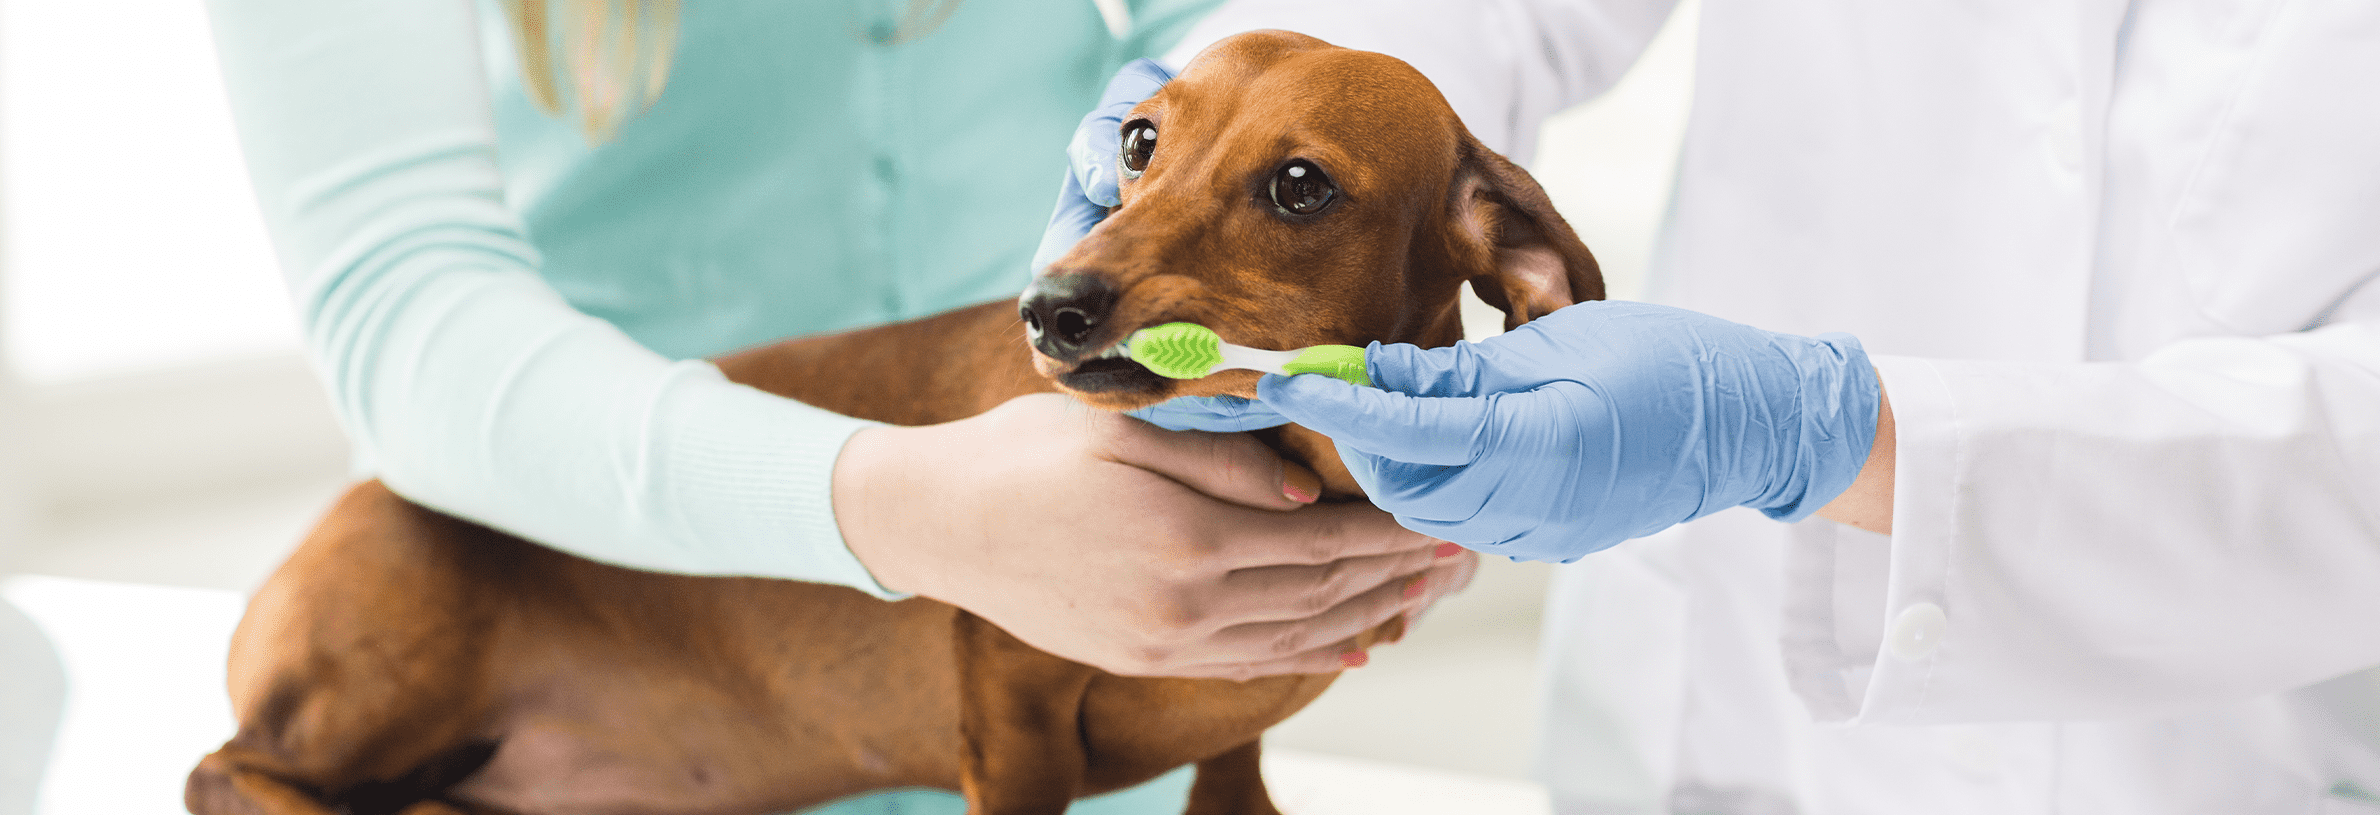 Vies hondengebit behandelen